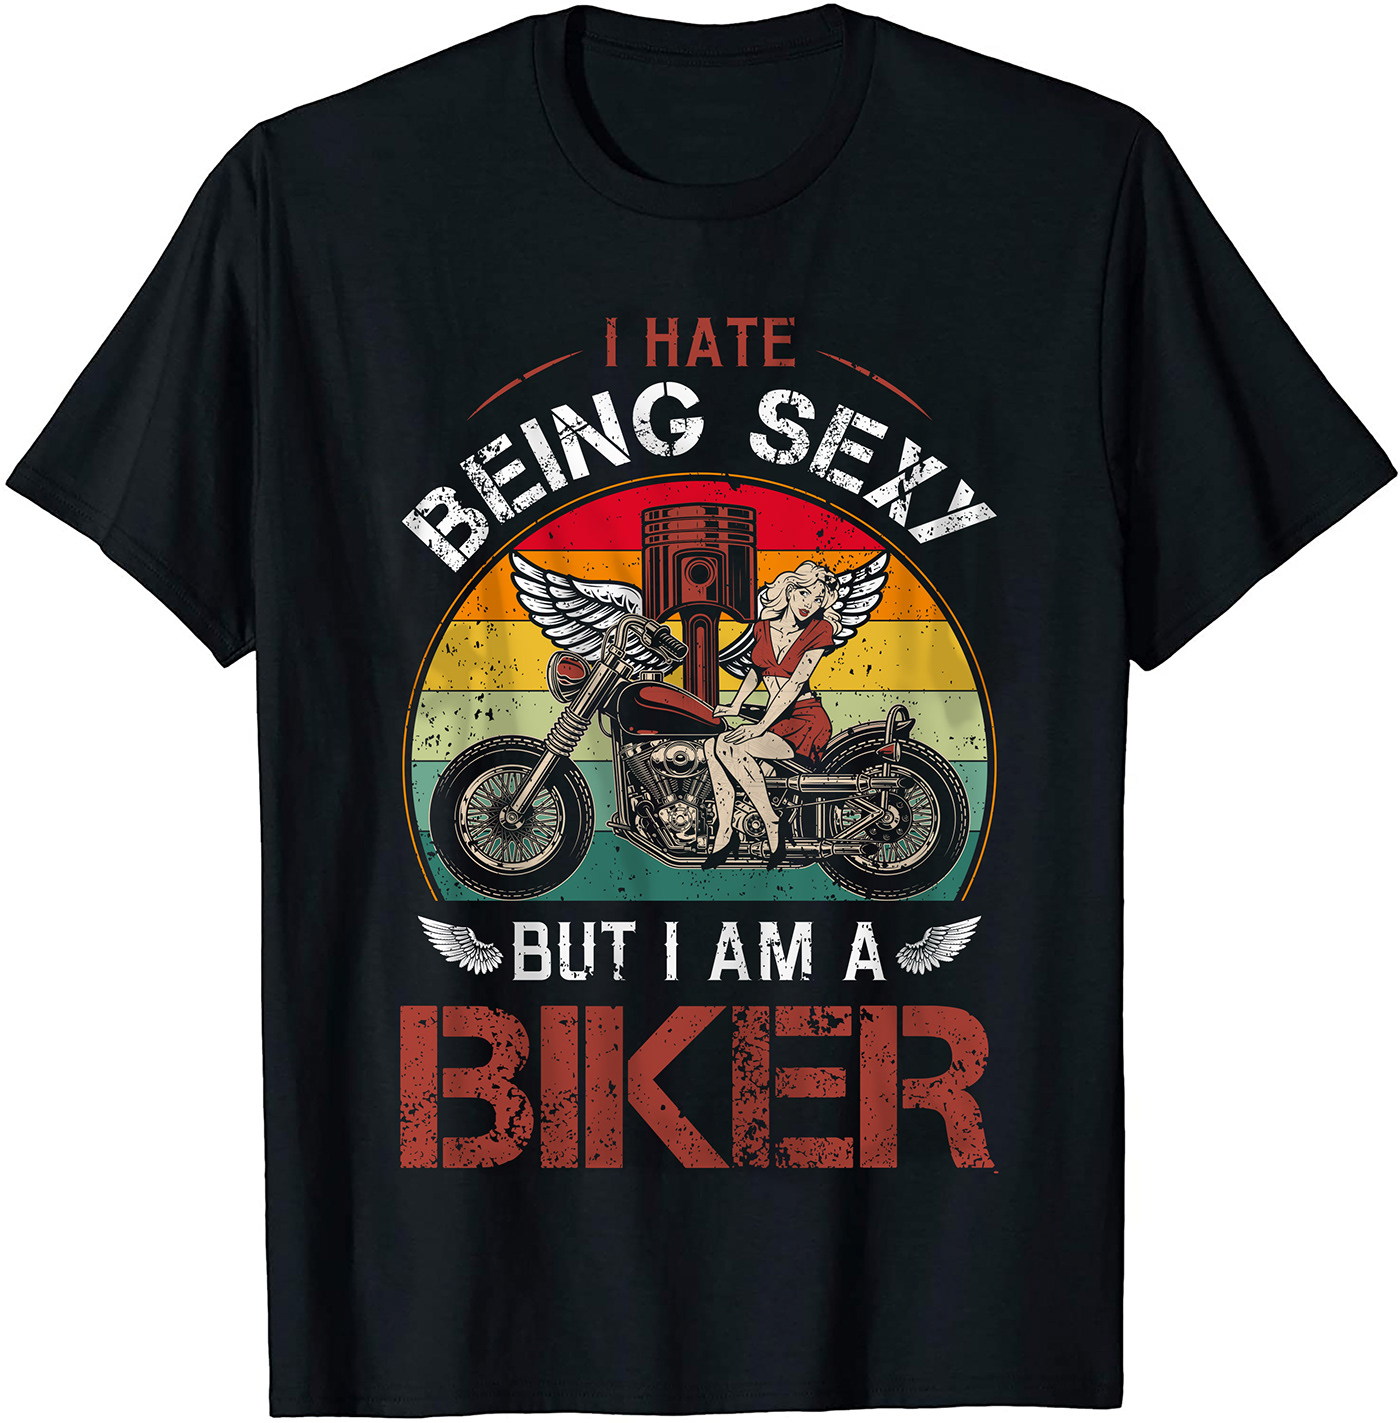 Bike Clothing motorbike design motorcycle Motorcycle T-shirt MOTORCYCLE T-SHIRT BUNDLE ride t-shirt T-Shirt Design tshirt